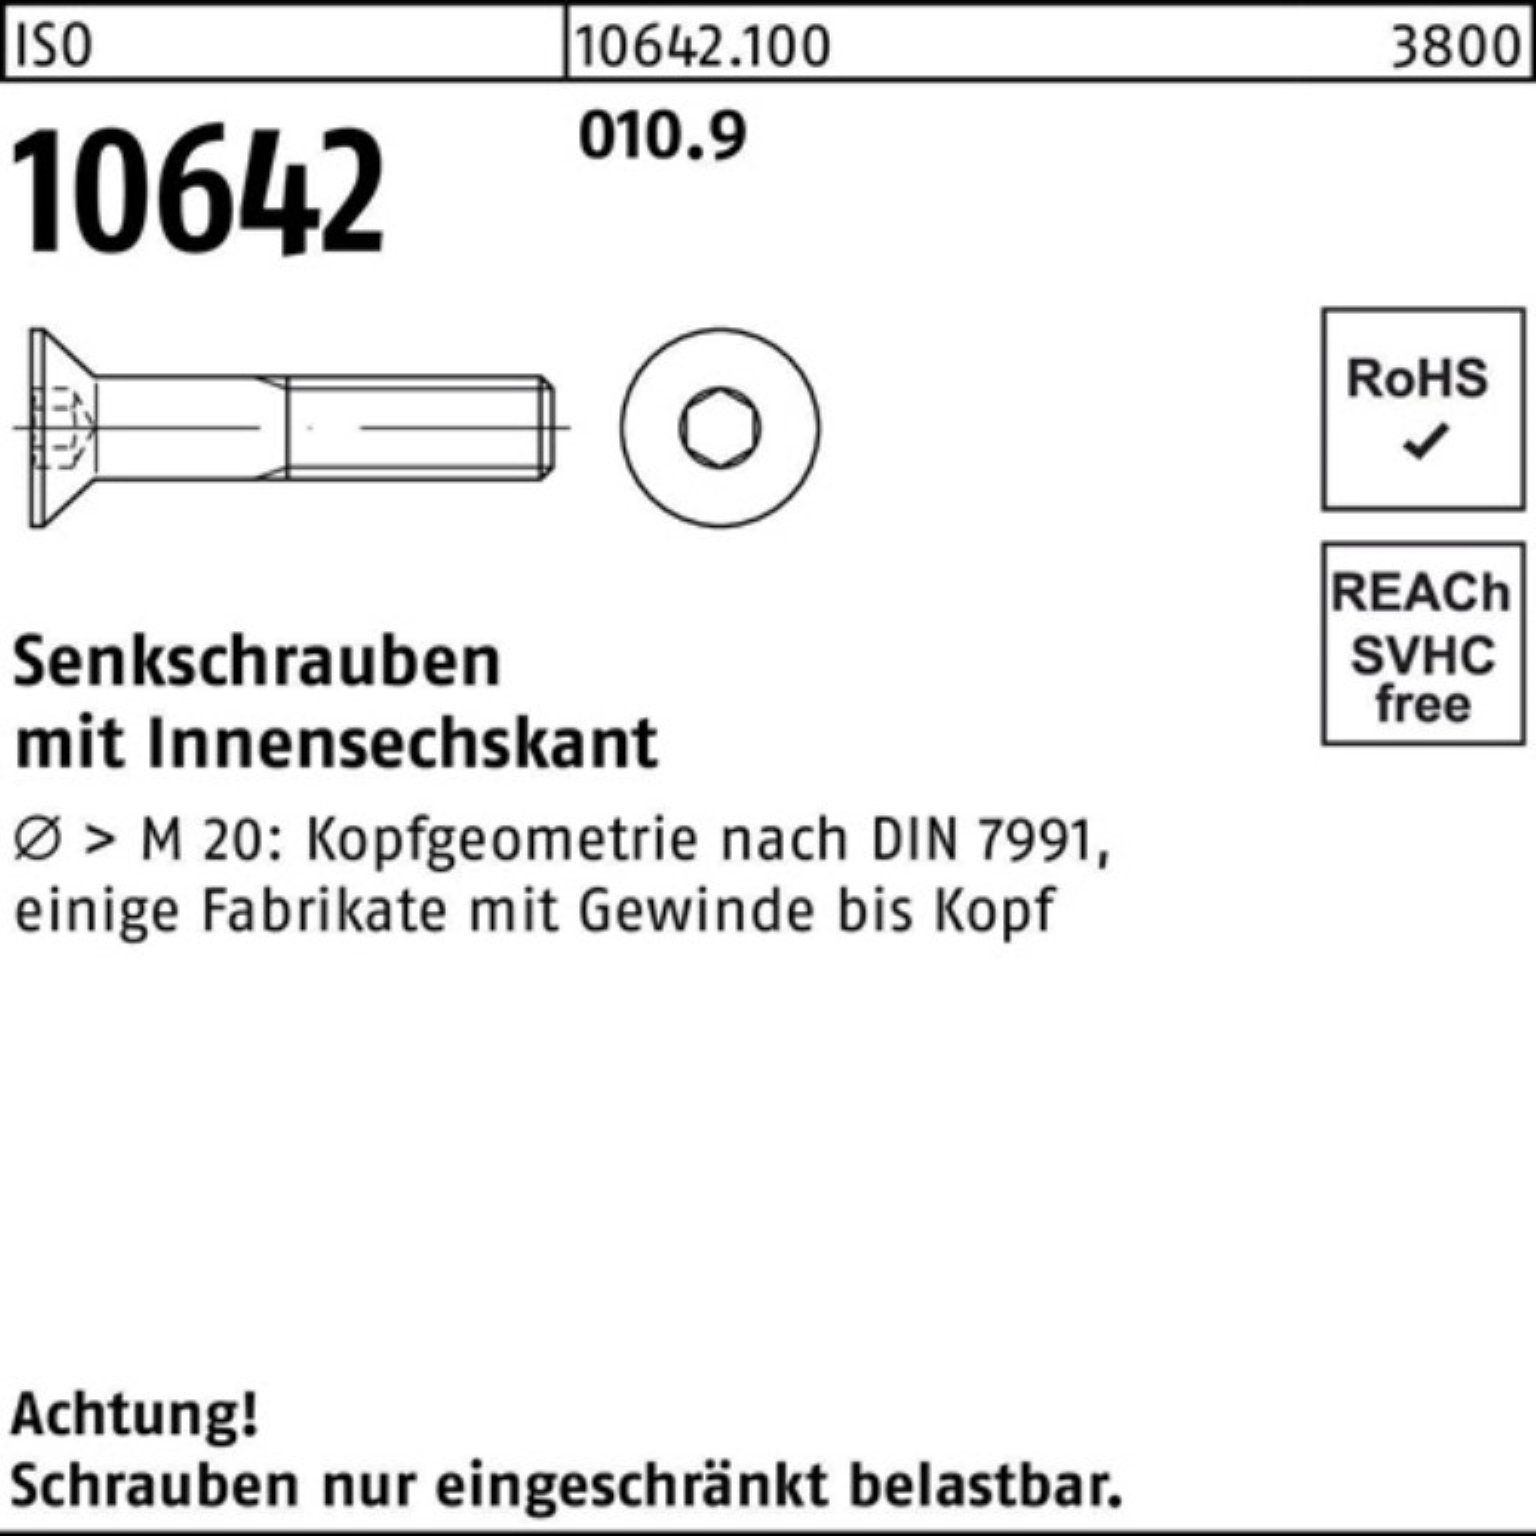 Reyher Senkschraube 500 Pack Innen-6kt Senkschraube 010.9 ISO ISO M3x Stück 10642 6 500er